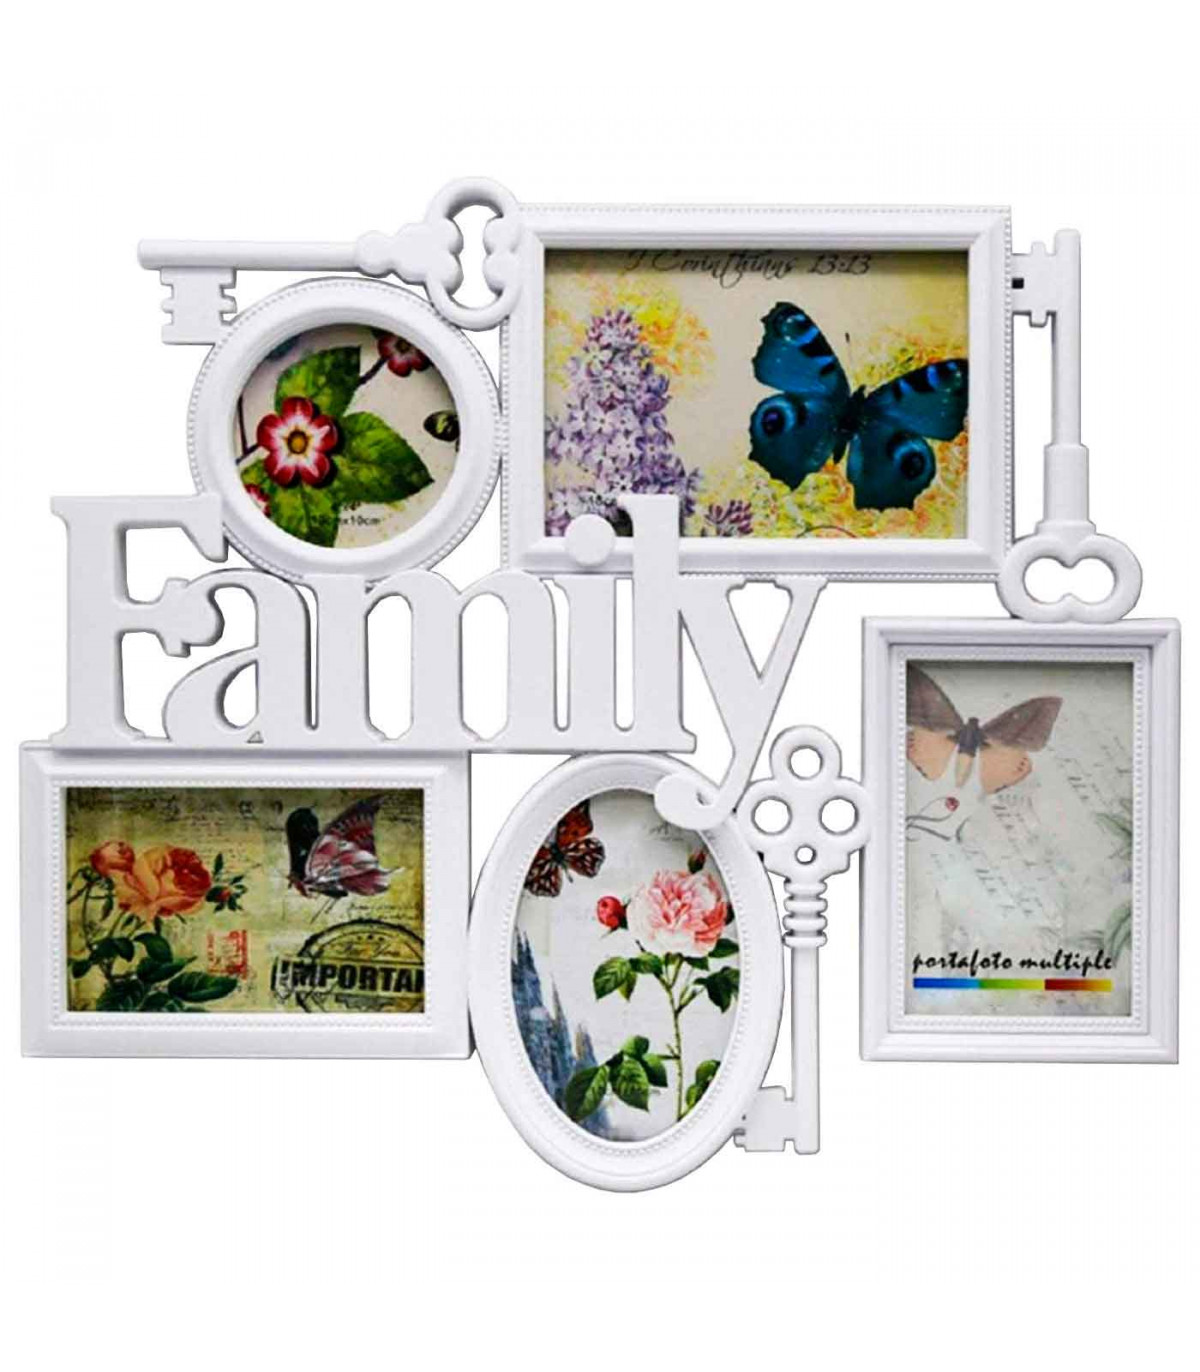 Marco para 5 fotos de pared múltiple 39 x 45 x 2 cm decoración del hogar  family. Multimarco portafotos color blanco